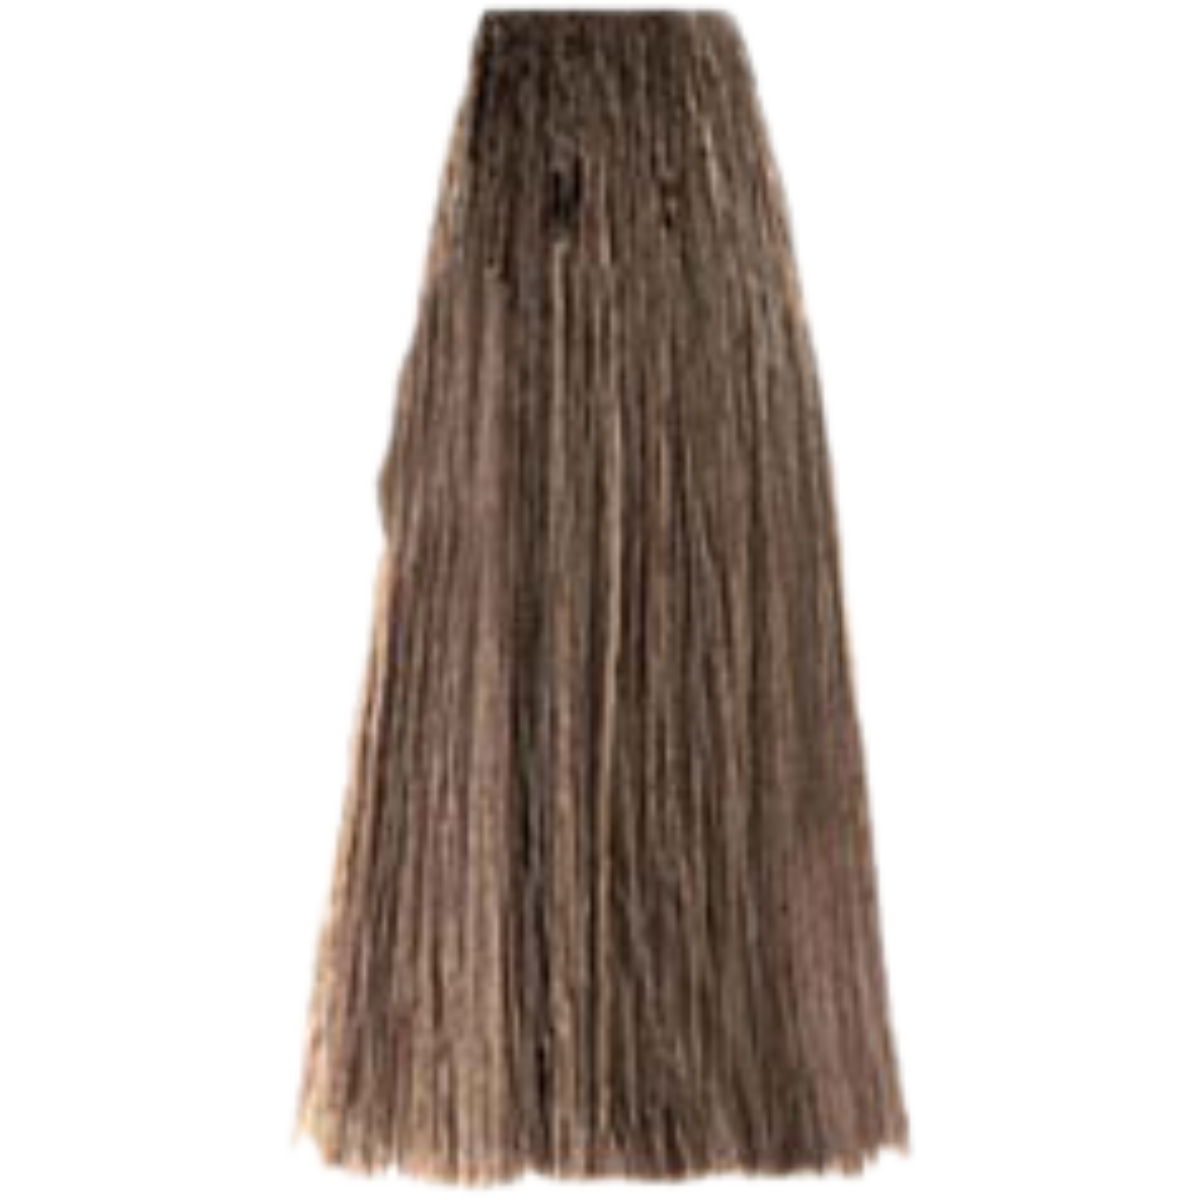 צבע שיער 7.13 BEIGE BLONDE פארמויטה FarmaVita צבע לשיער 100 גרם